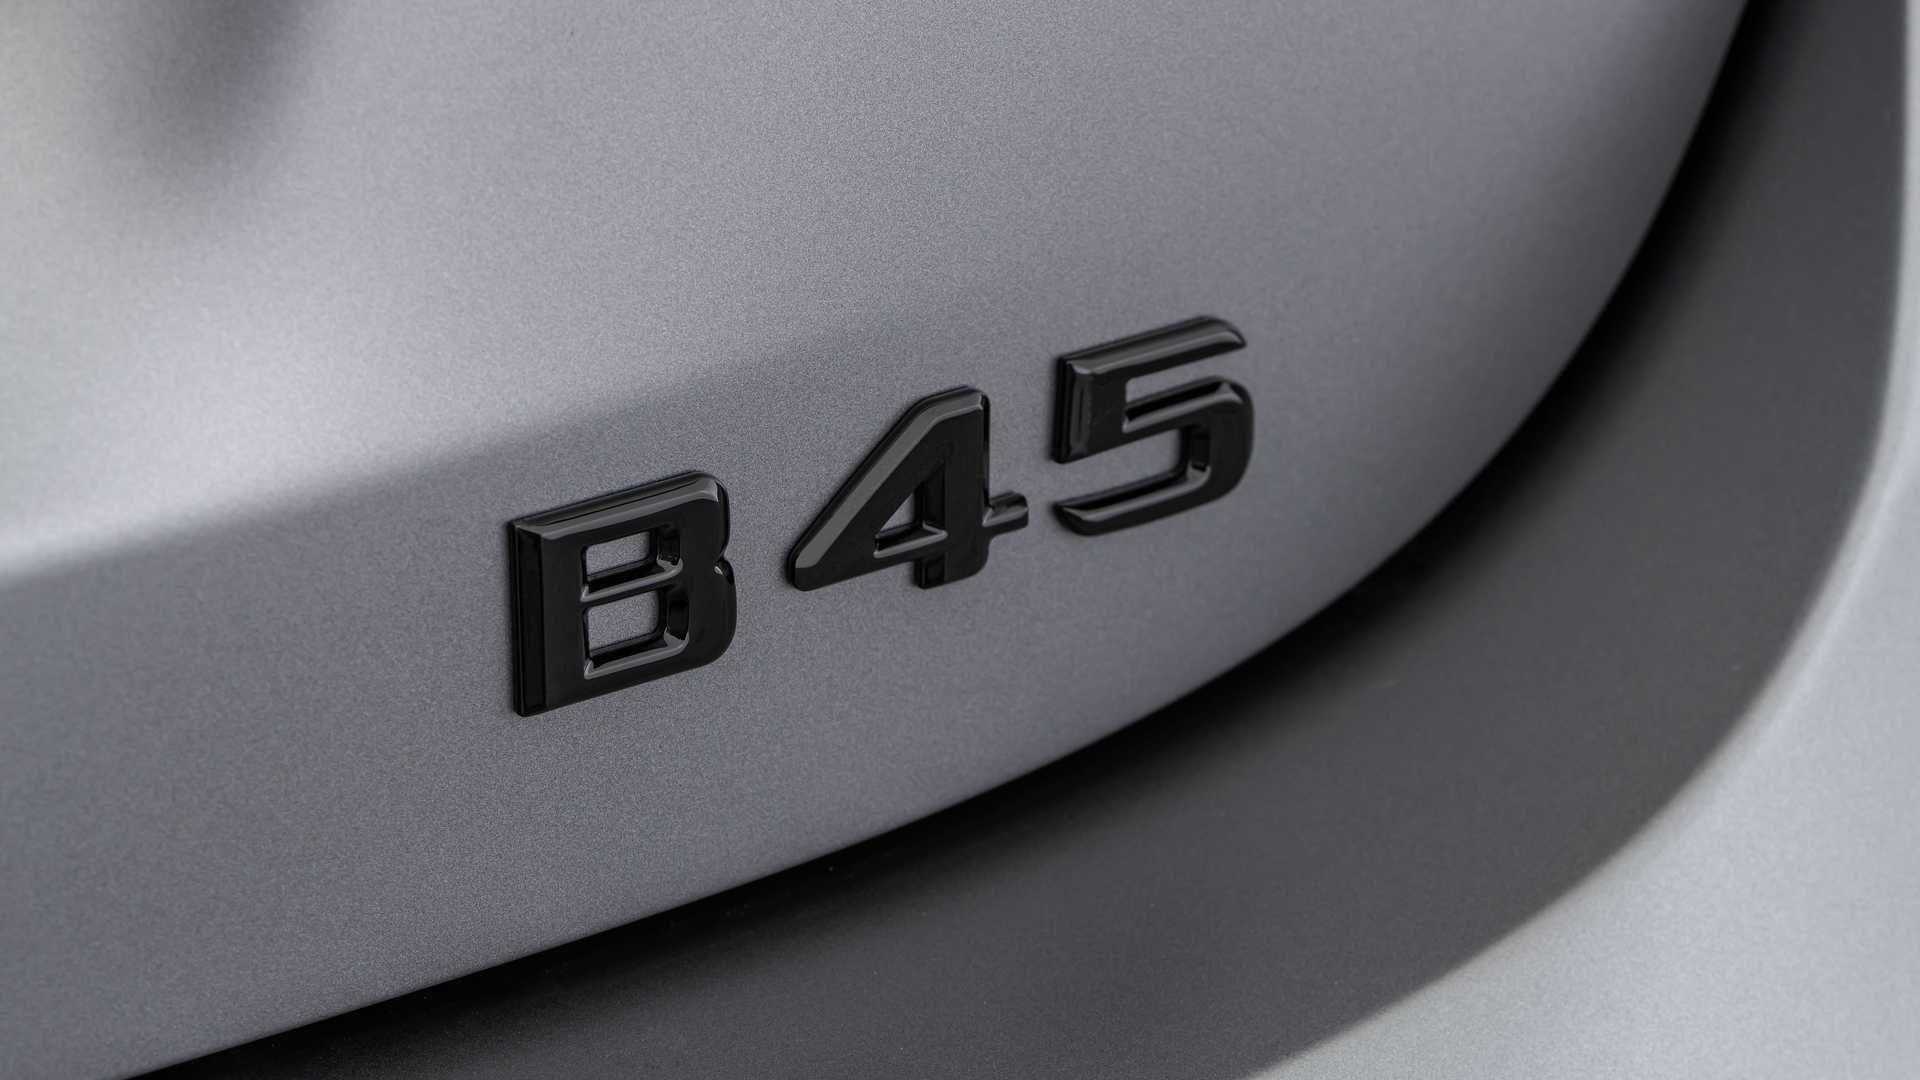 2021 Mercedes-AMG B45 by Brabus